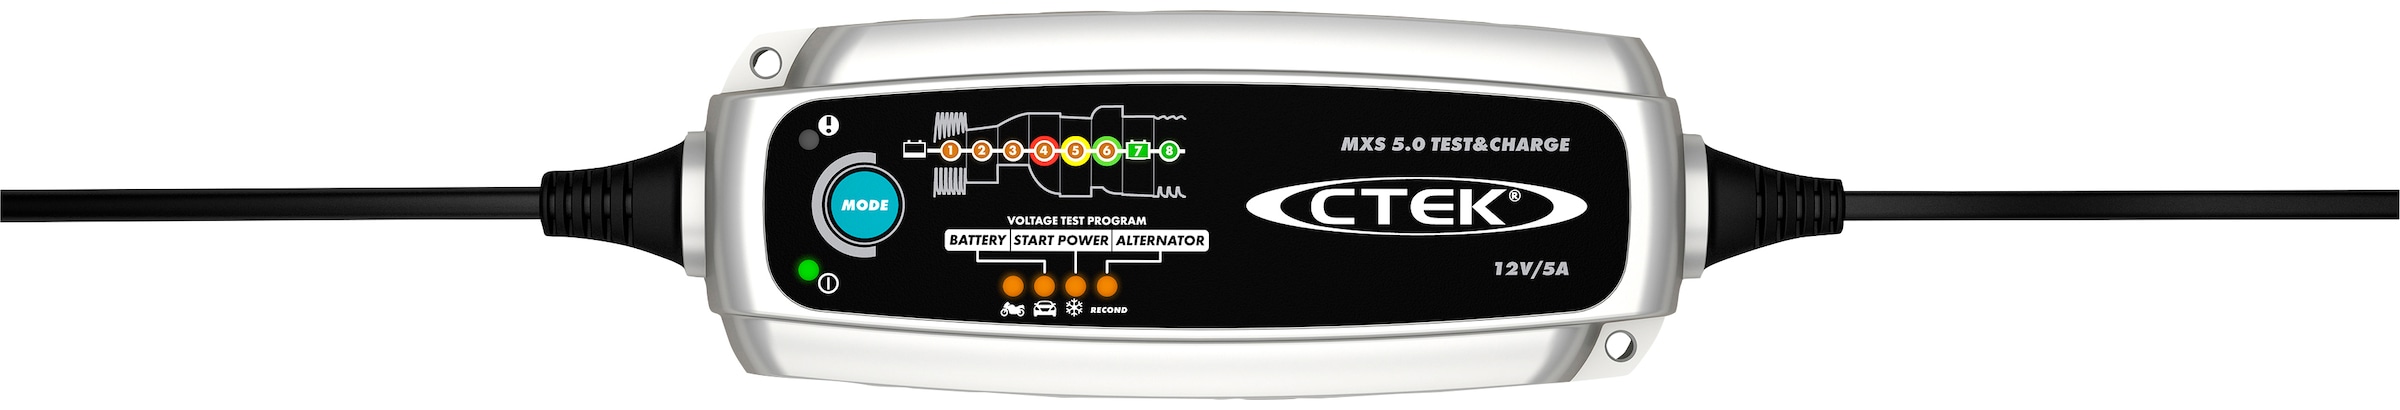 CTEK Batterie-Ladegerät »MXS 5.0 Test & Charge«, Spannung, Startleistung  und Leistungsverhalten der Lichtmaschine